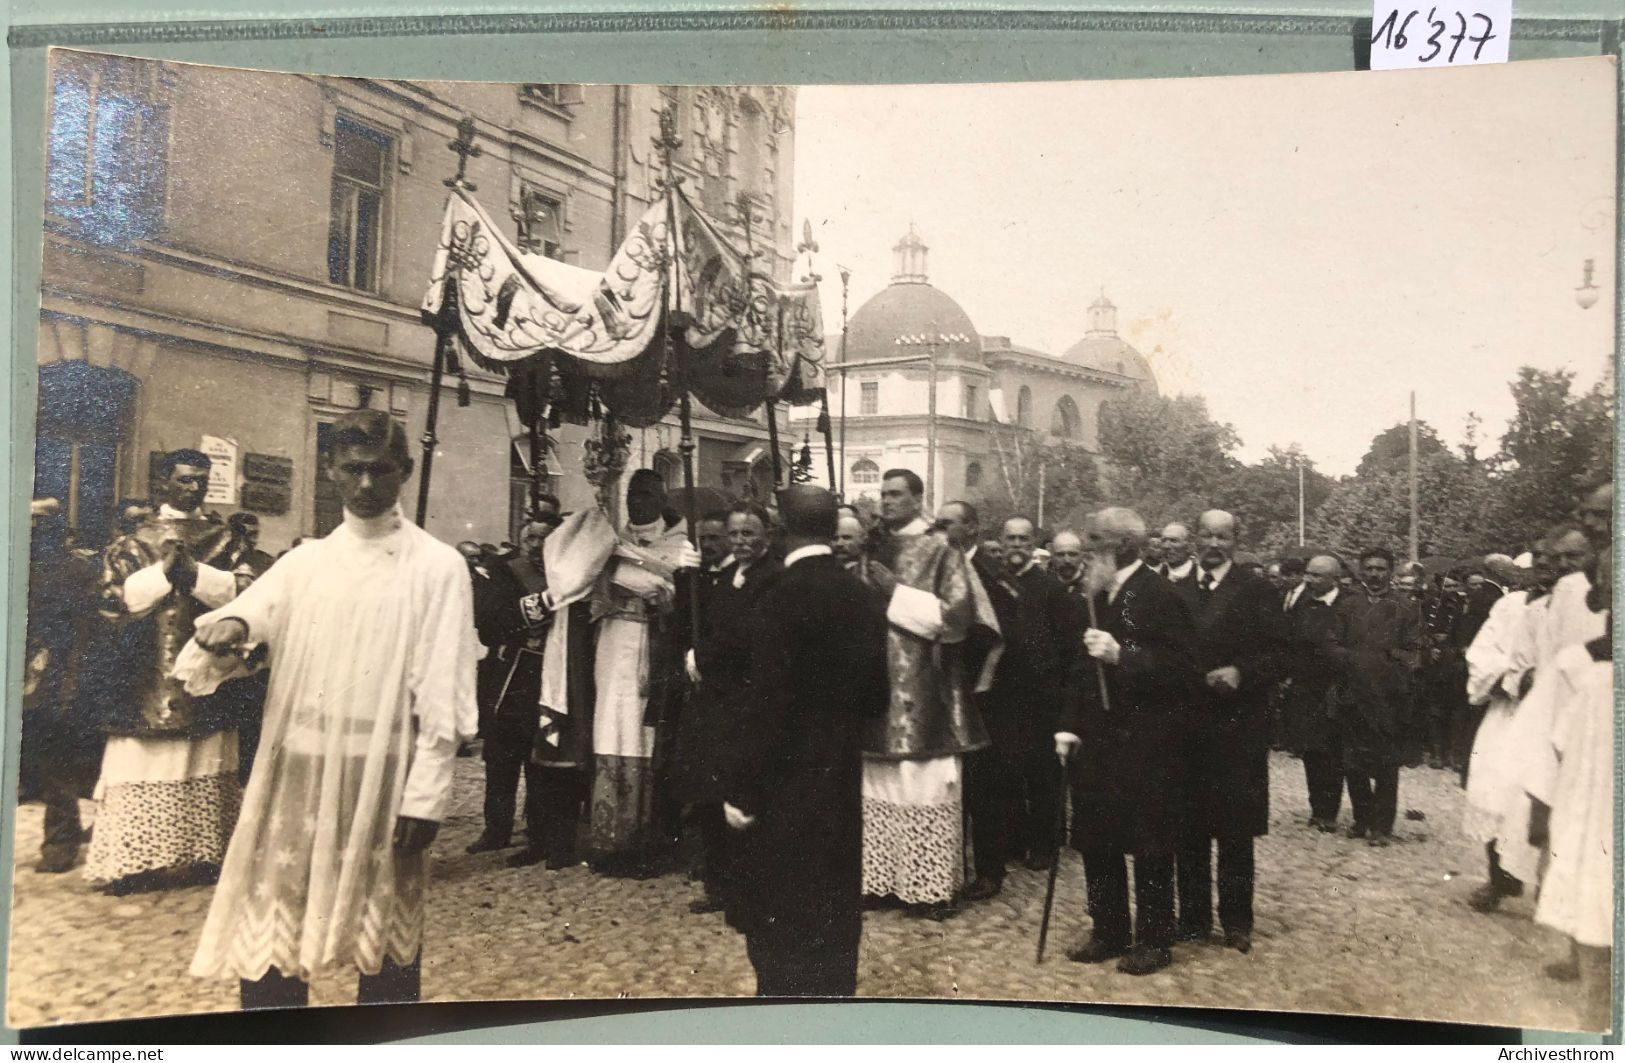 Wilno : 1917 Procession Autour De La Cathédrale De Vilnius (16'377) - Litouwen